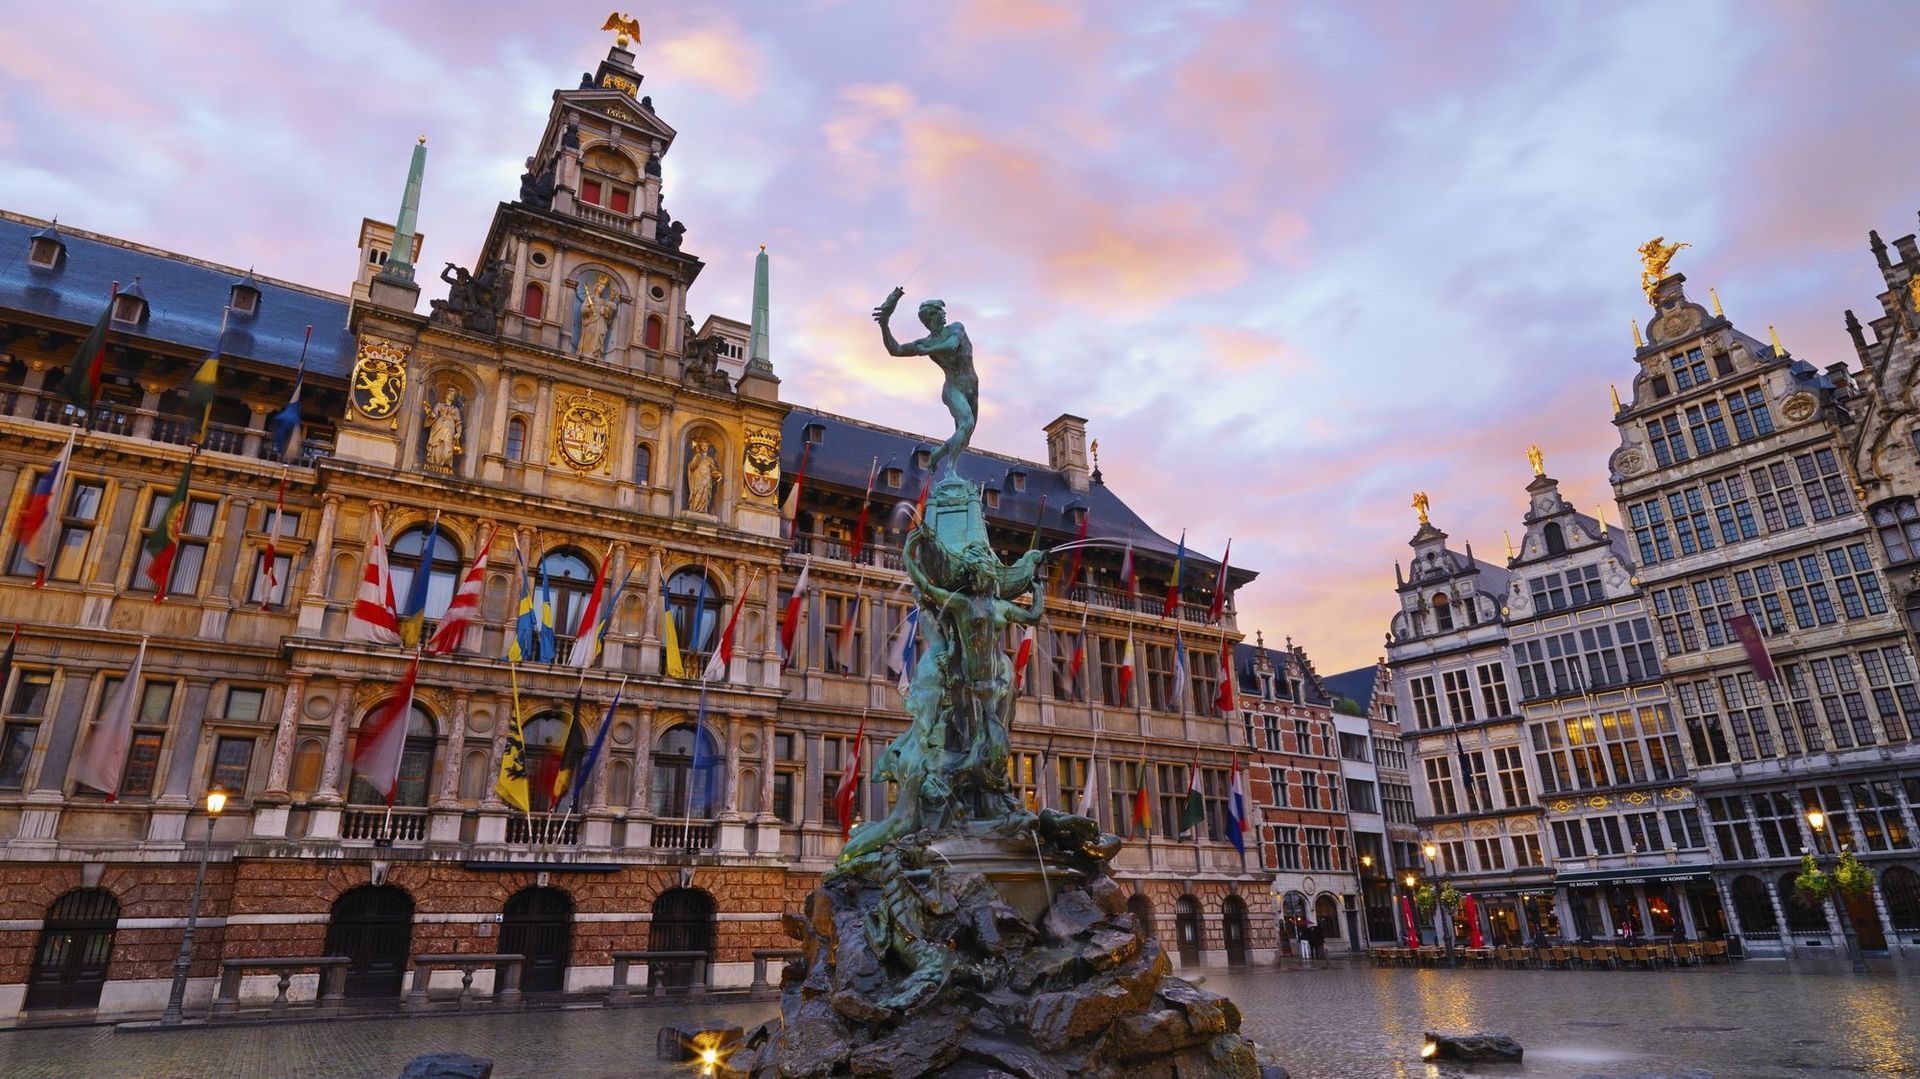 Hôtel de Ville d’Anvers et statue de Brabo